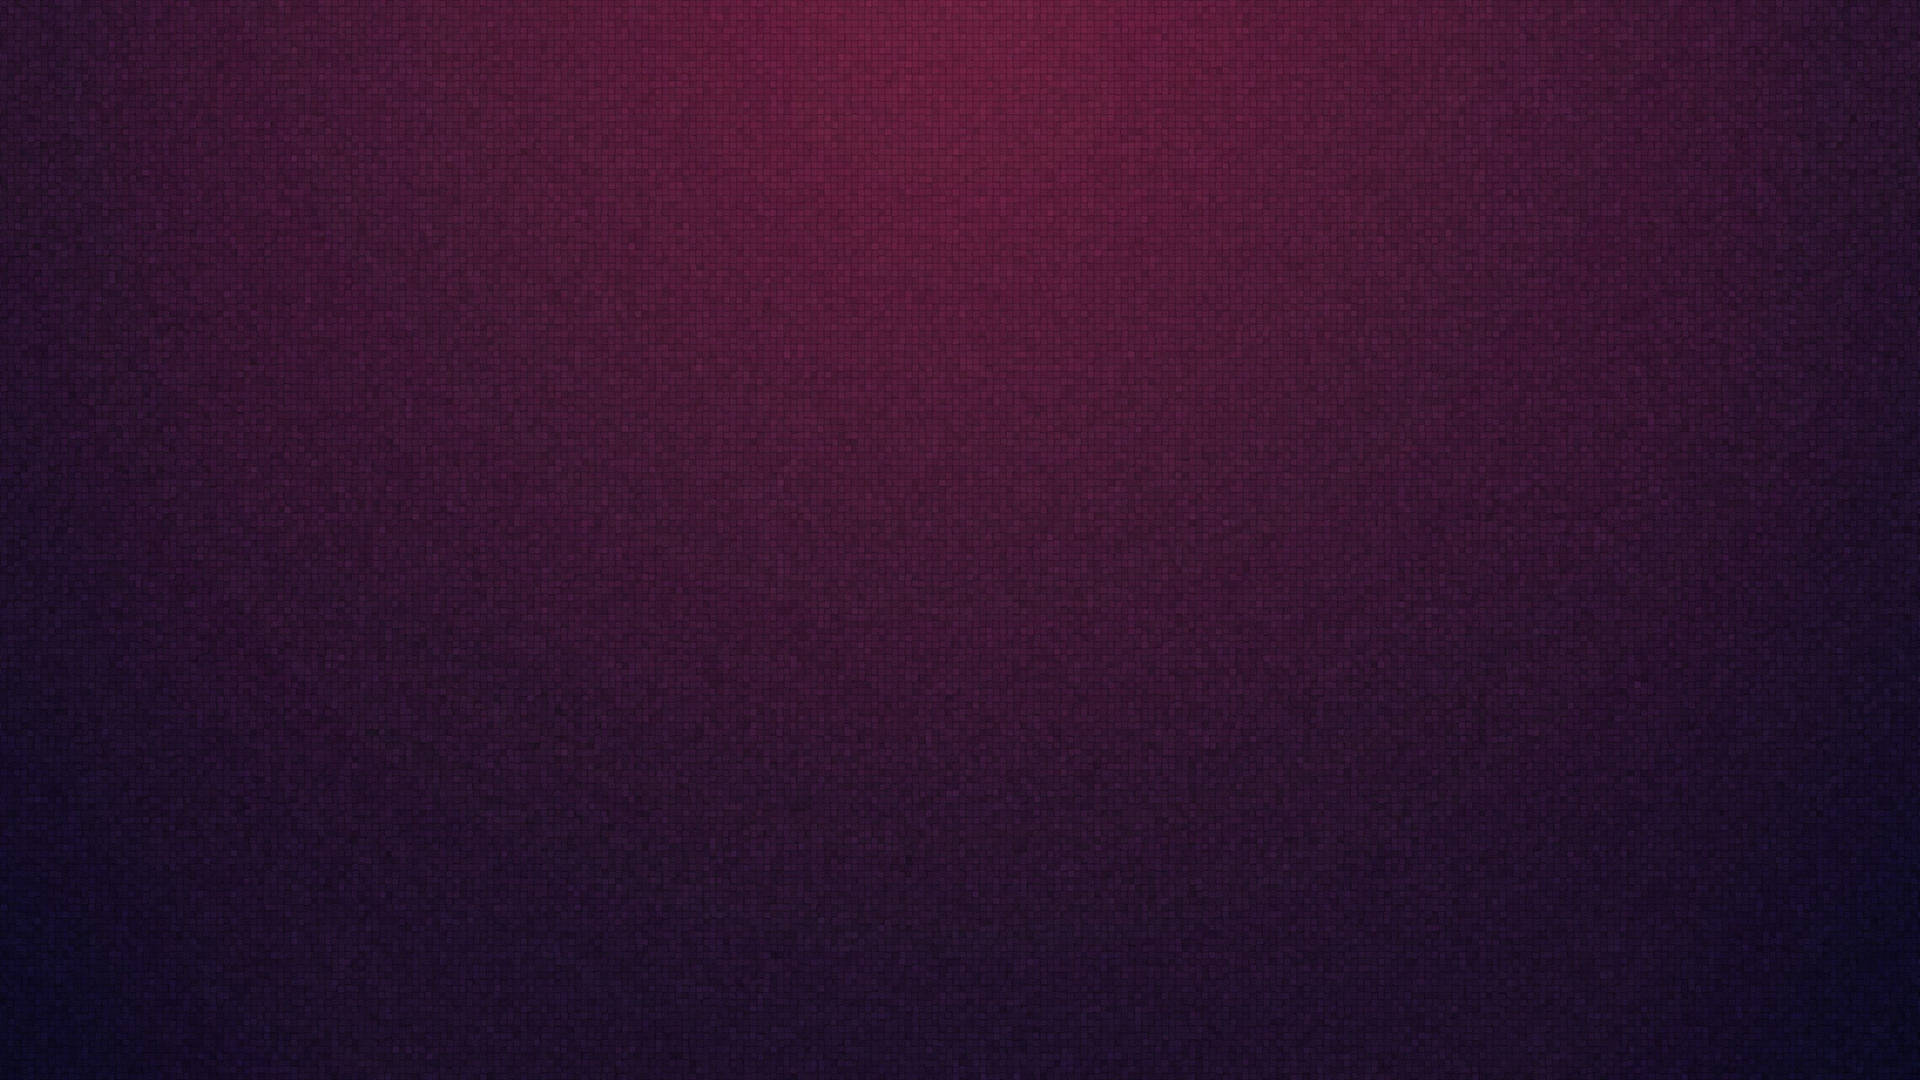 Blank Dark Violet Template Background